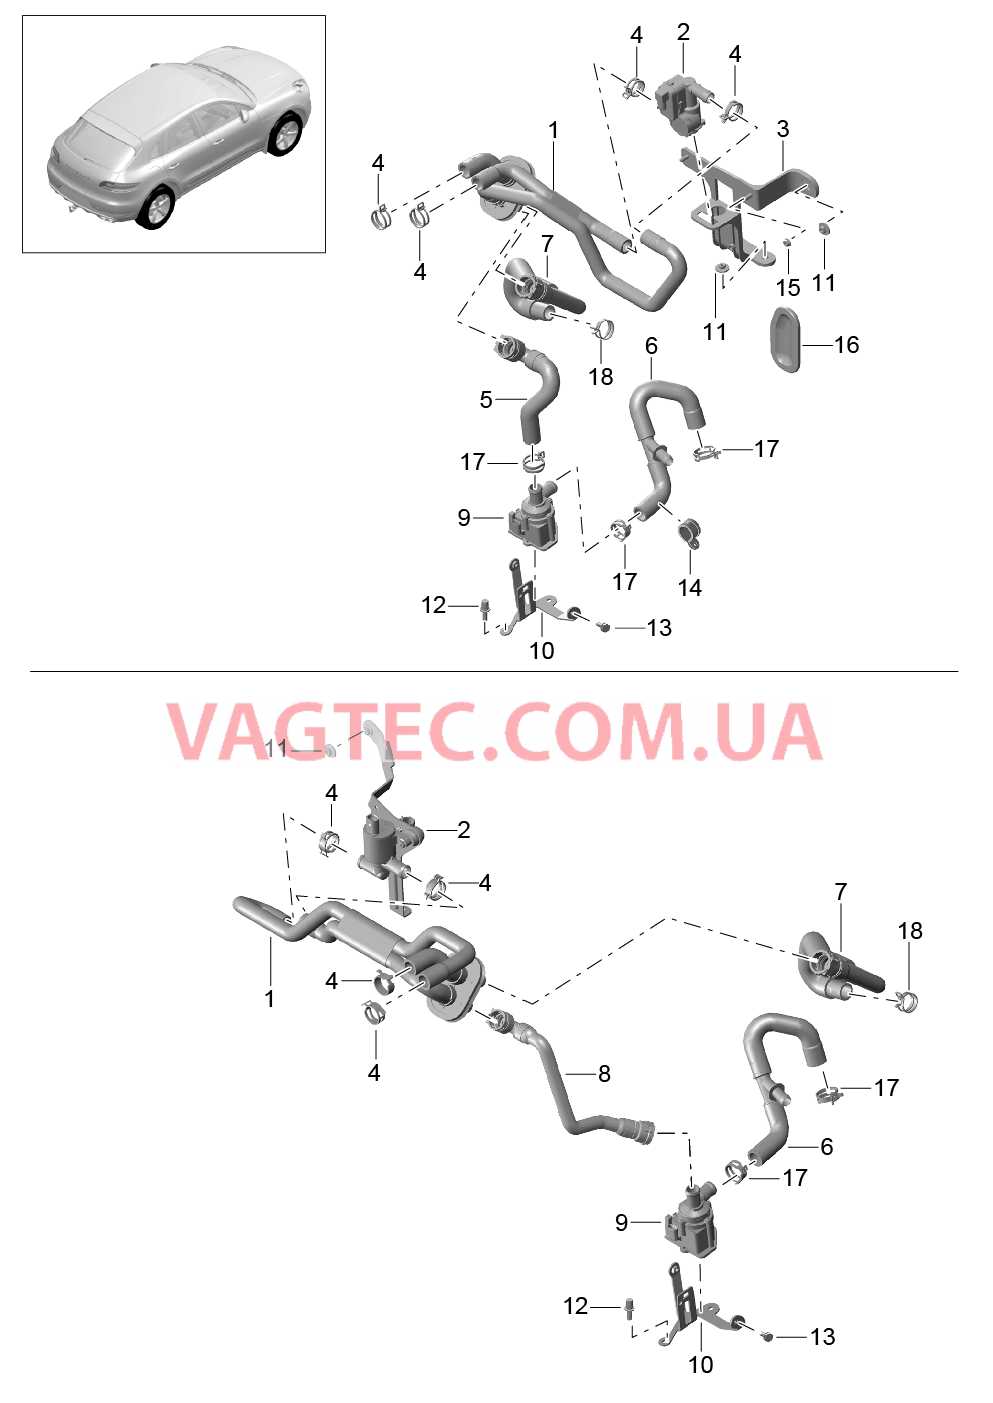 813-005 Проводка обогрева, Подвод, Задний ход, Базовый
						
						V6 BT, IDU0/DU1 для PORSCHE Macan 2014-2017USA